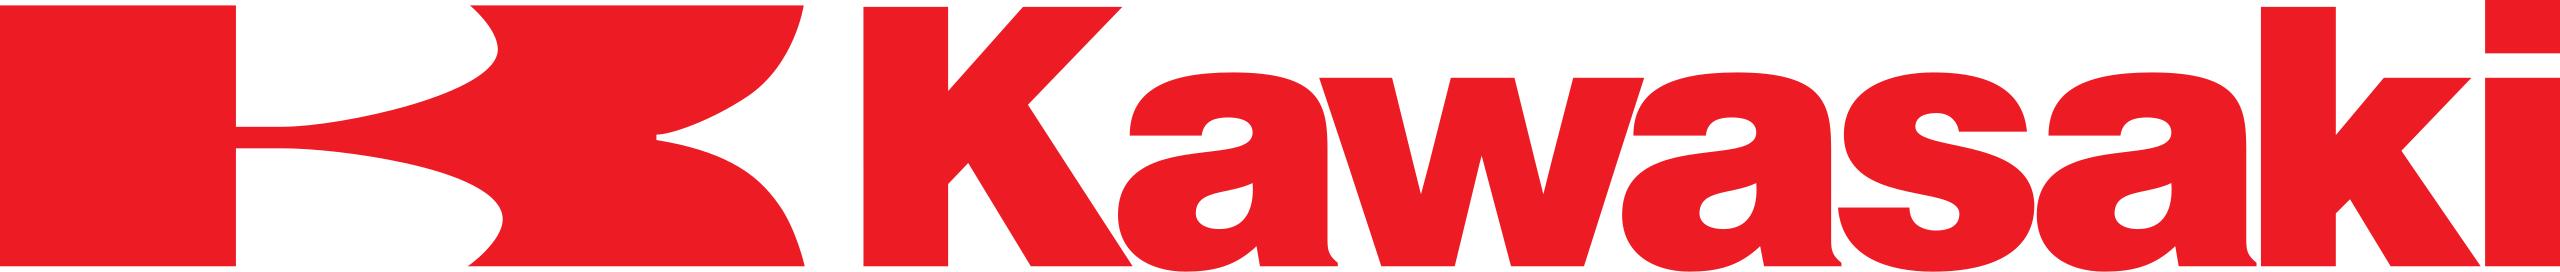 Kawasaki ZX10R vector logo download free